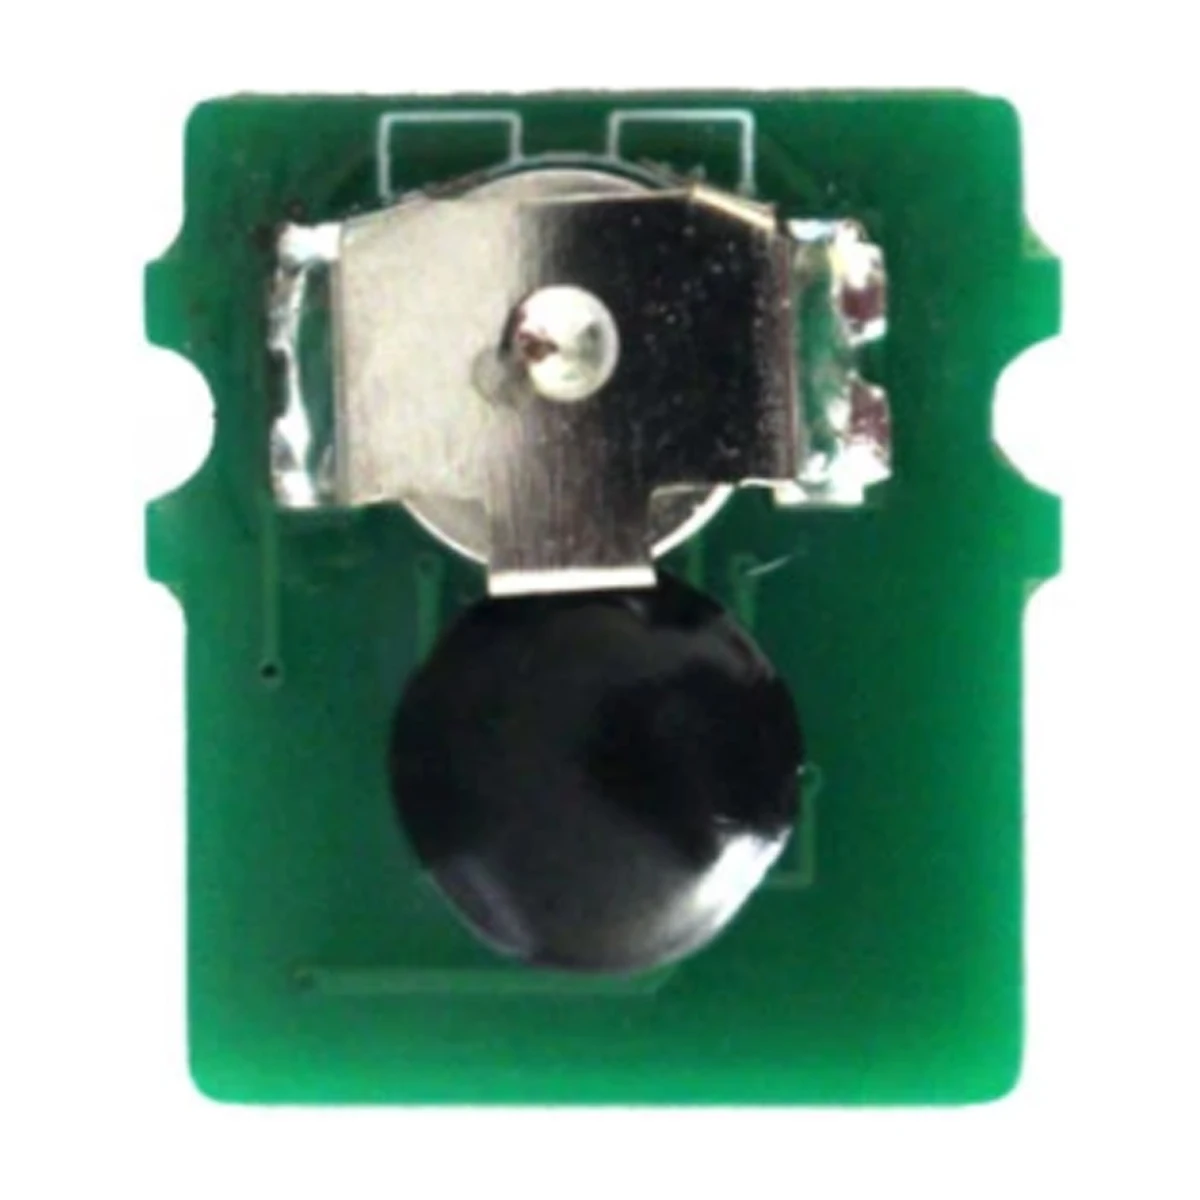 TN233, TN237 Toner Chip For Brother HL-L3210CW DCP-L3551CDW MFC-L3710CW  L3770CDW